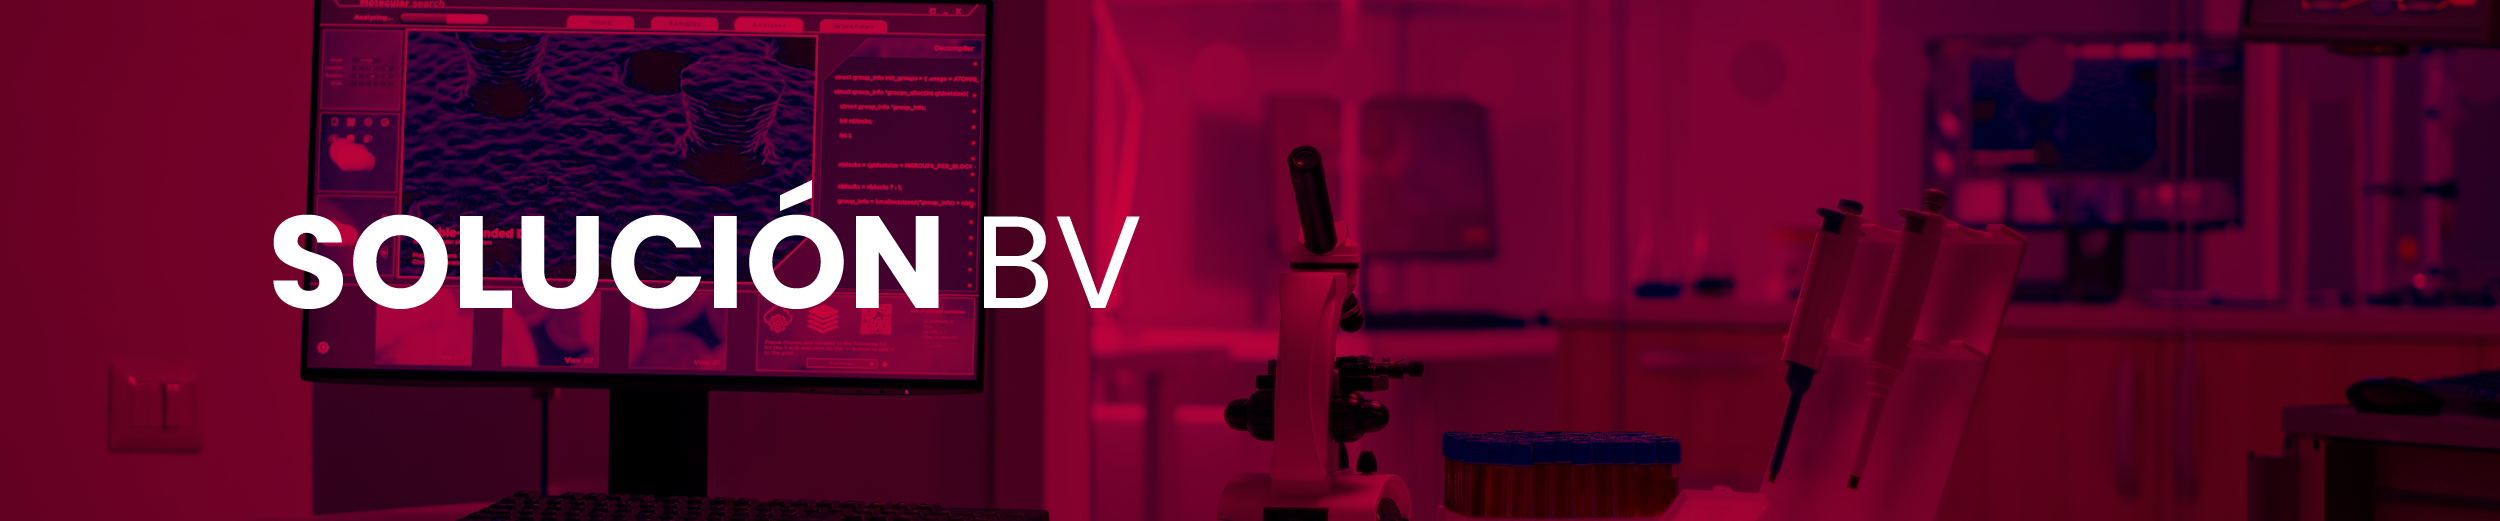 Banner Solución BV preparación muestras